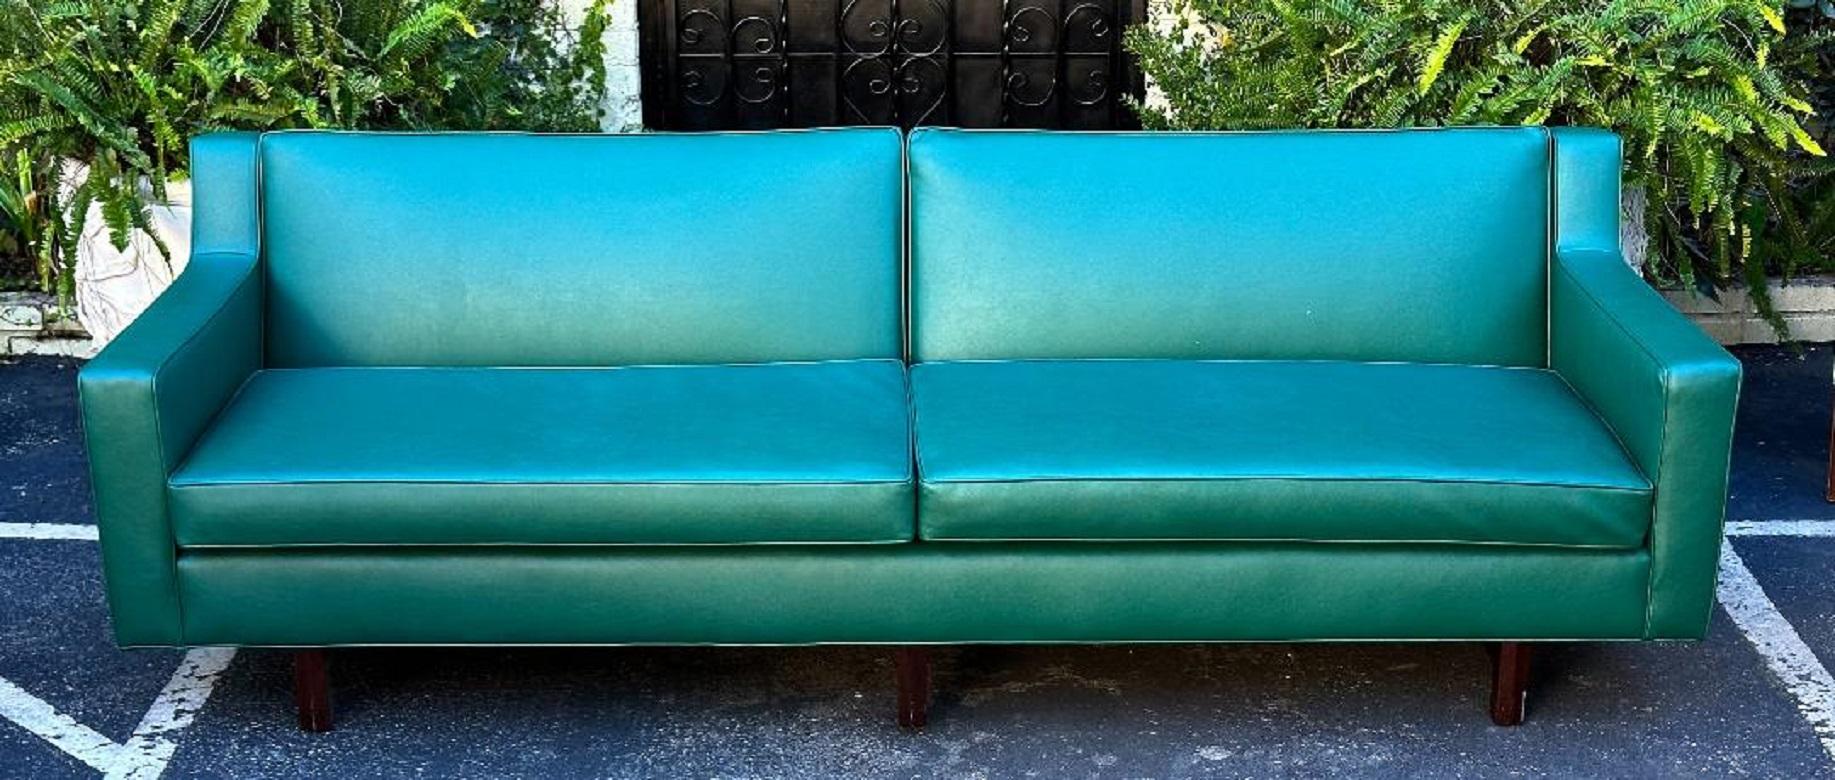 1960s for Dunbar Mid Century Modern Mid Century Modern Green Faux Leather Sofa... La marque du fabricant Dunbar est illustrée sur la dernière image, qui a été conservée sous le coussin lors du rembourrage. Attribué à Edward Wormley.

Informations